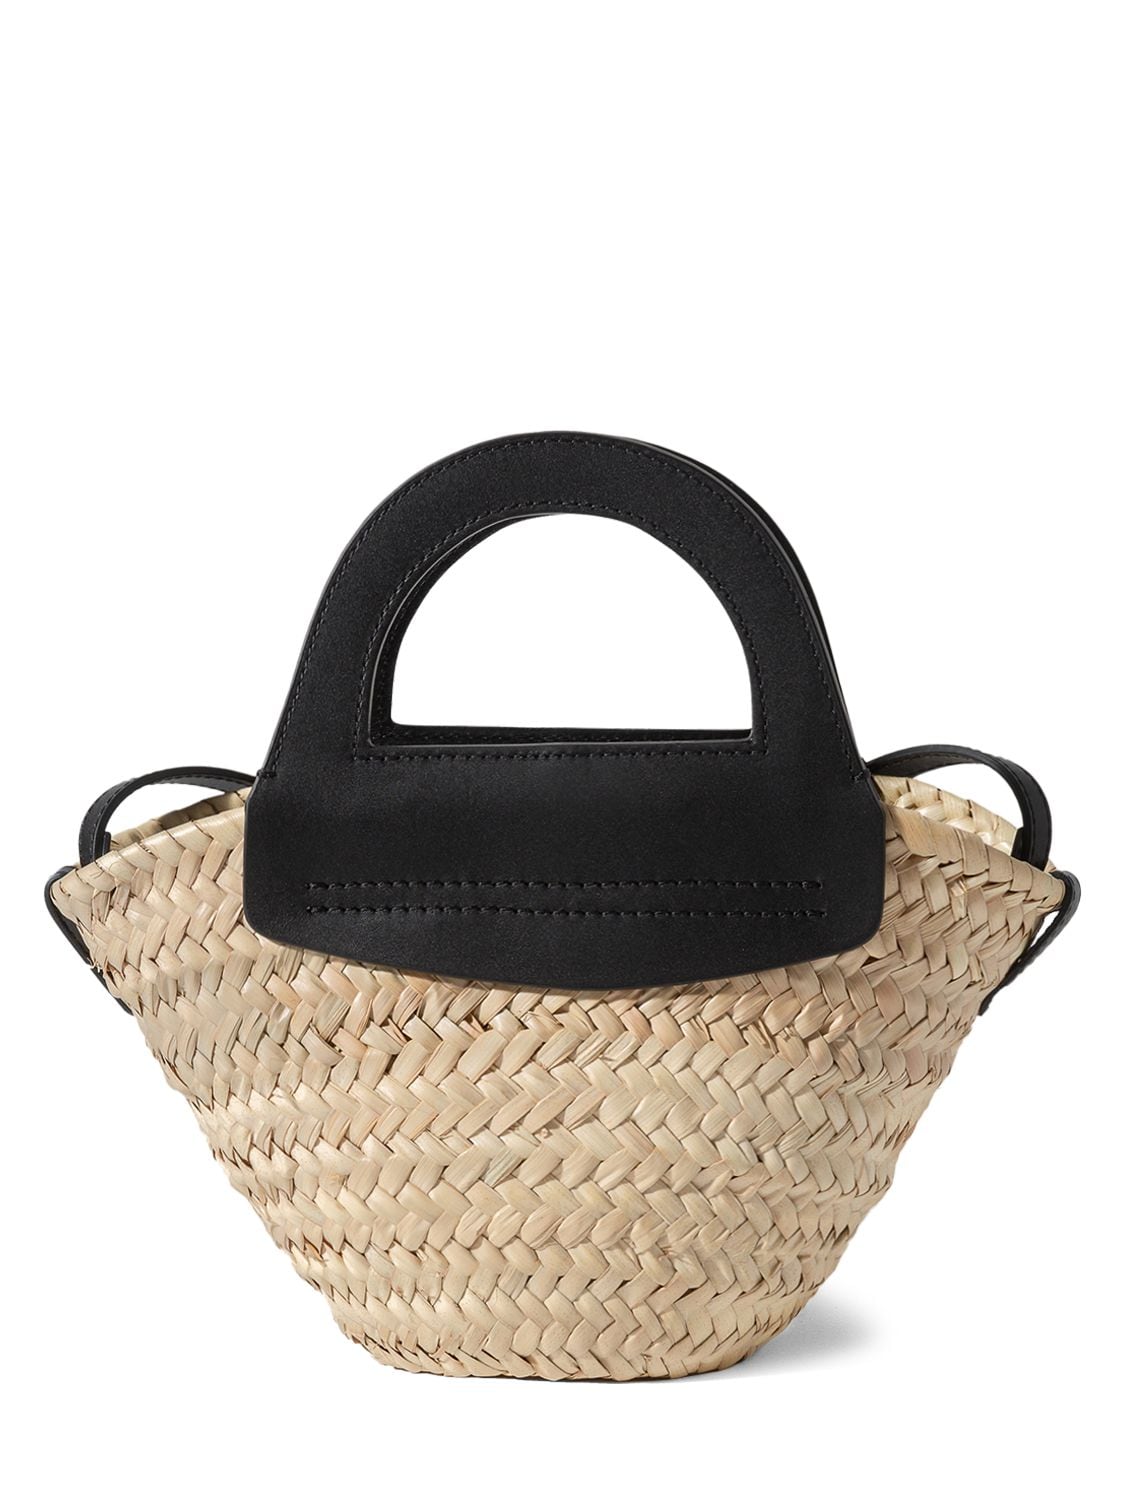 Image of Mini Cabas Leather & Raffia Tote Bag